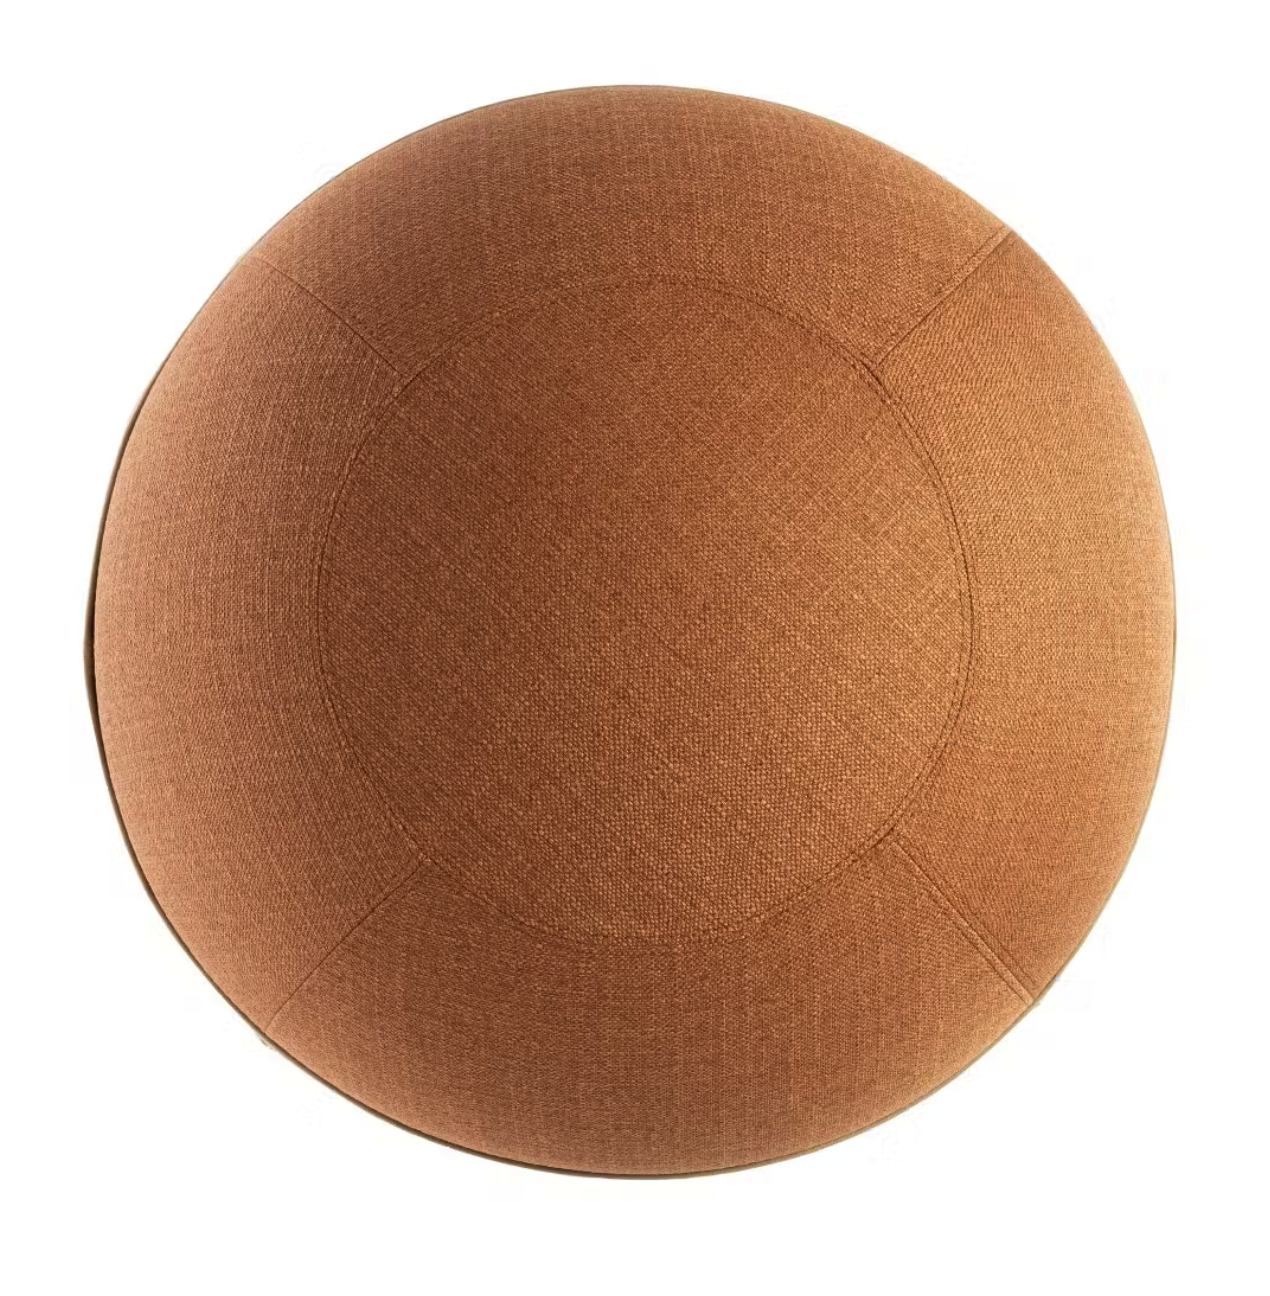 Ergonomic Sitting Ball Design Terracotta Regular